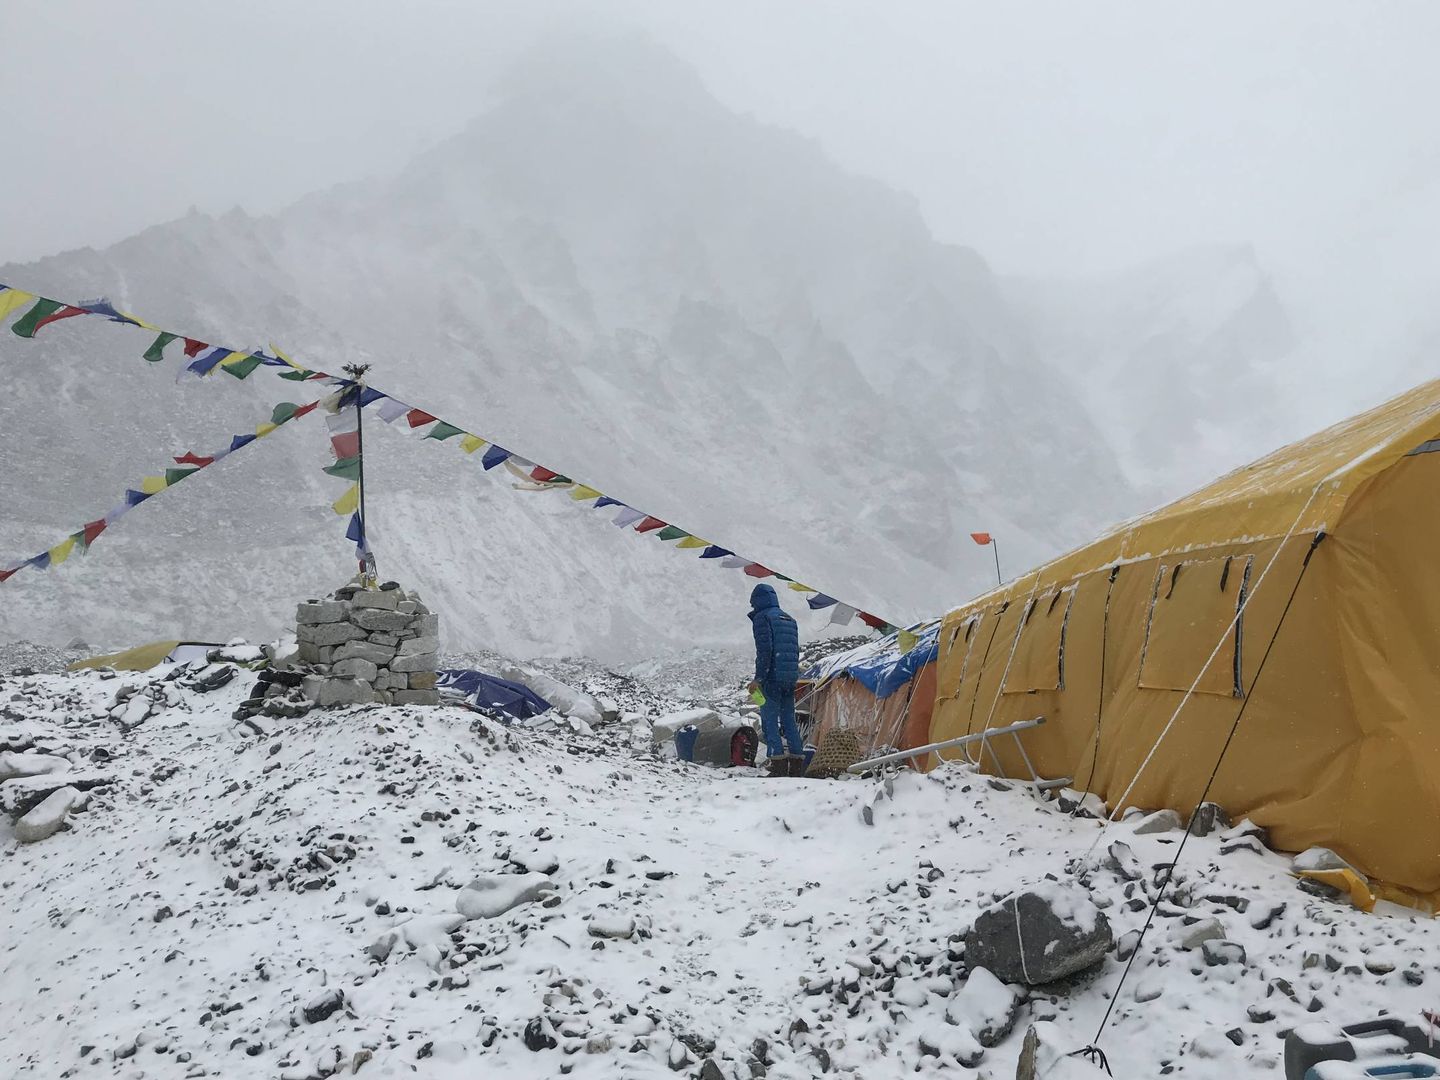 Vista del Campo base del Everest cubierto por la nieve.